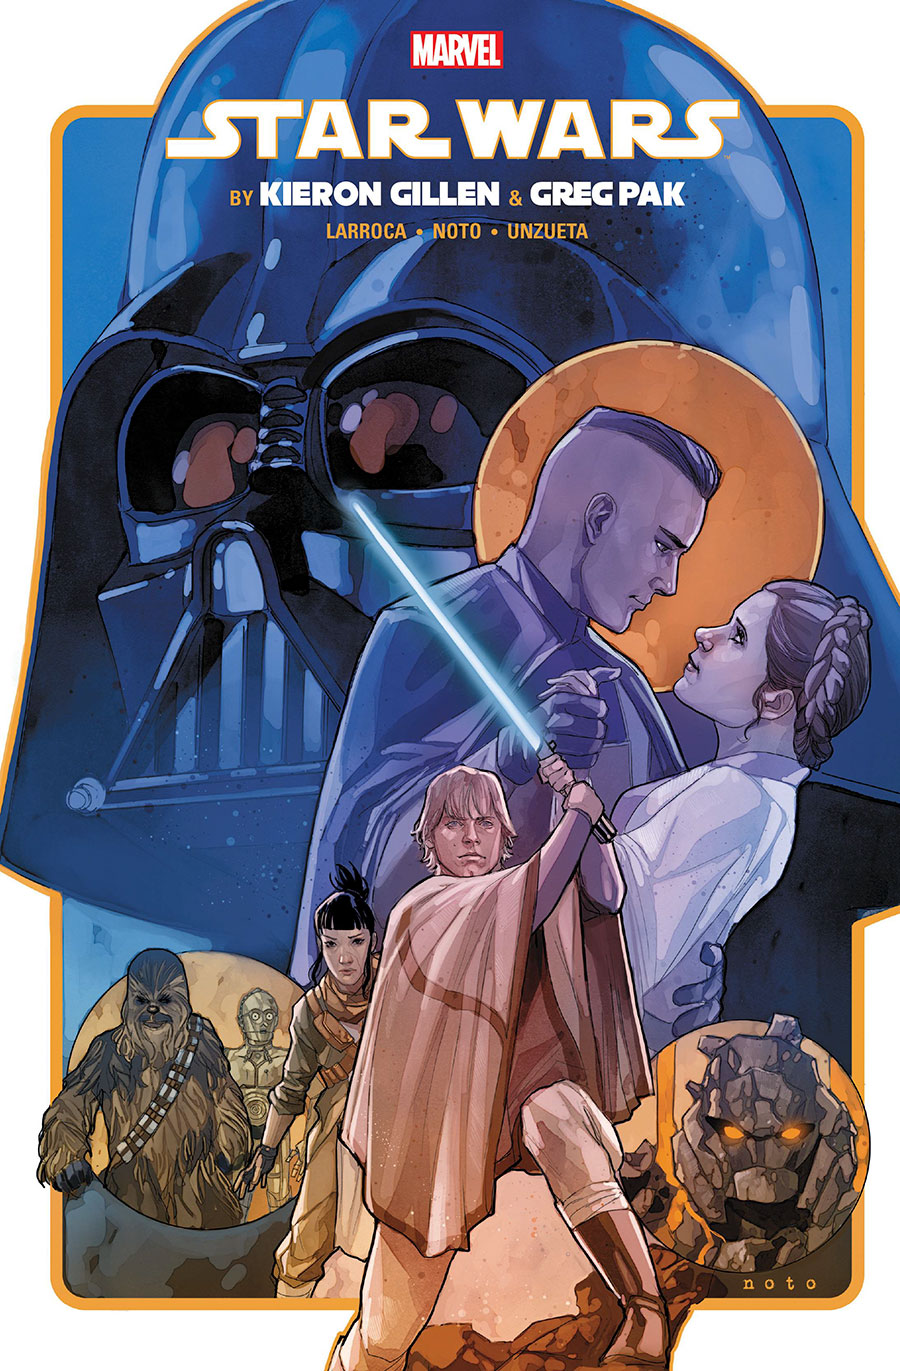 Star Wars By Kieron Gillen & Greg Pak Omnibus HC Book Market Phil Noto Cover